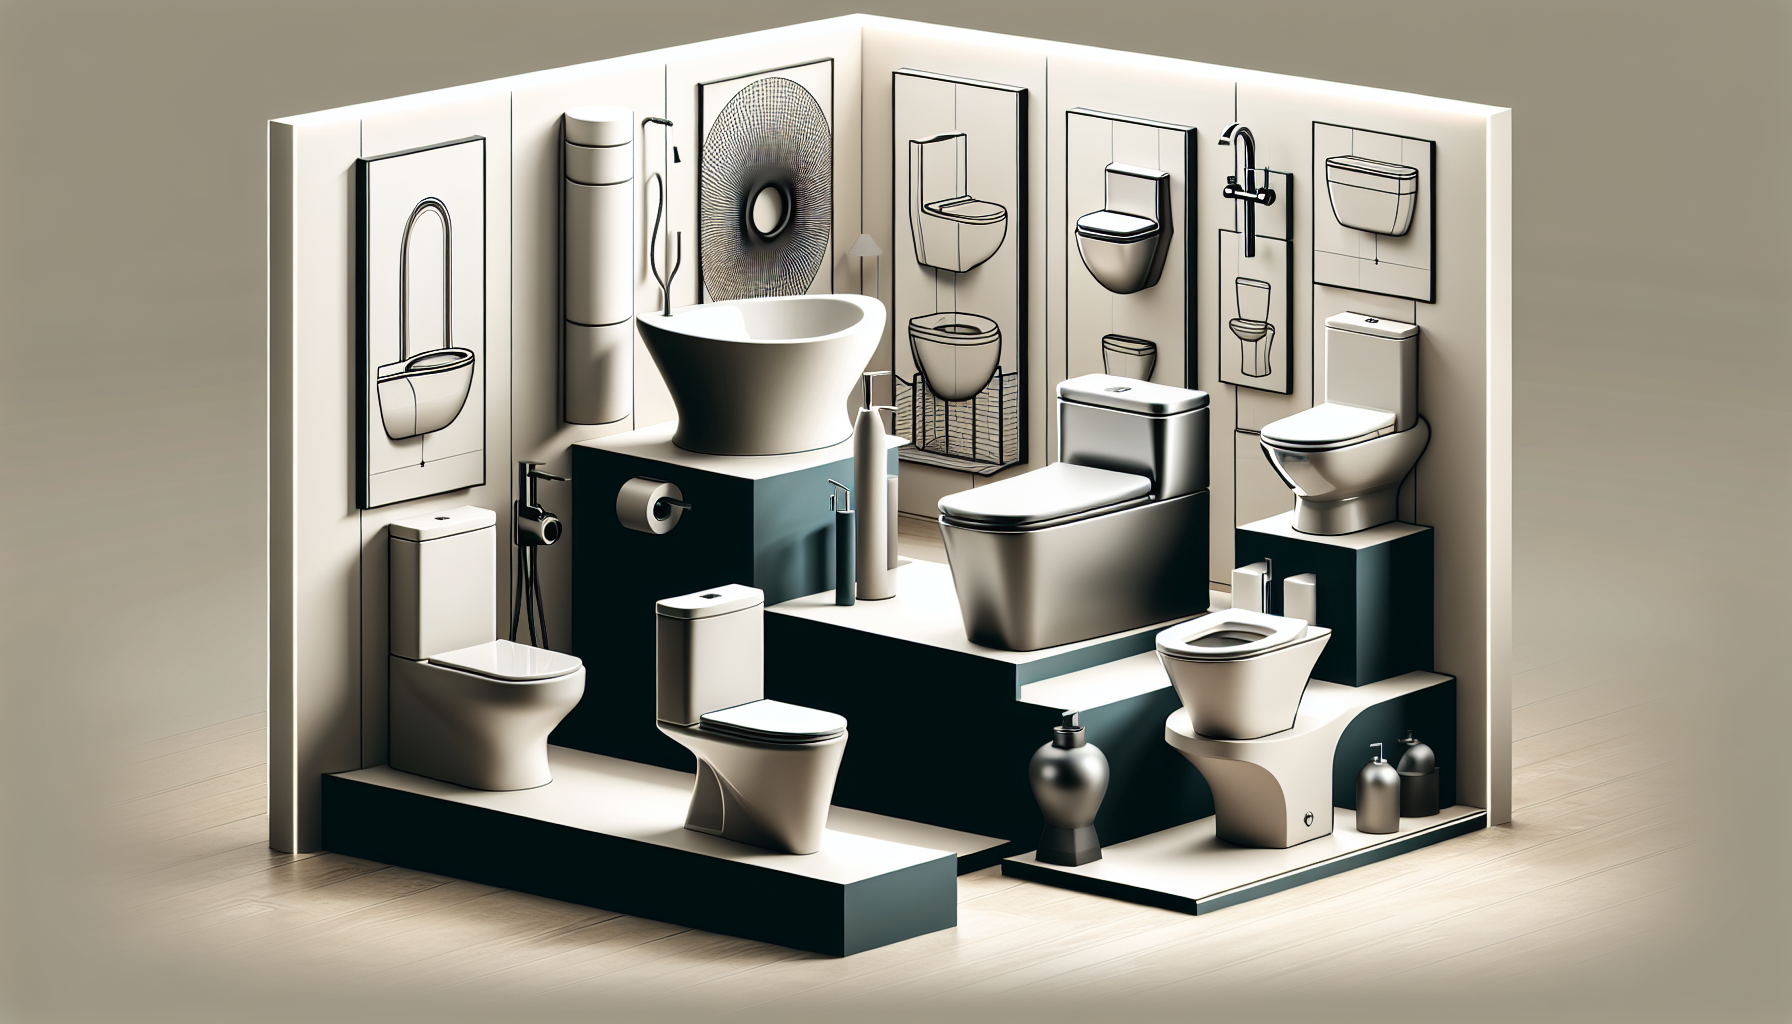 Ästhetisch ansprechendes Design von spülrandlosen WCs